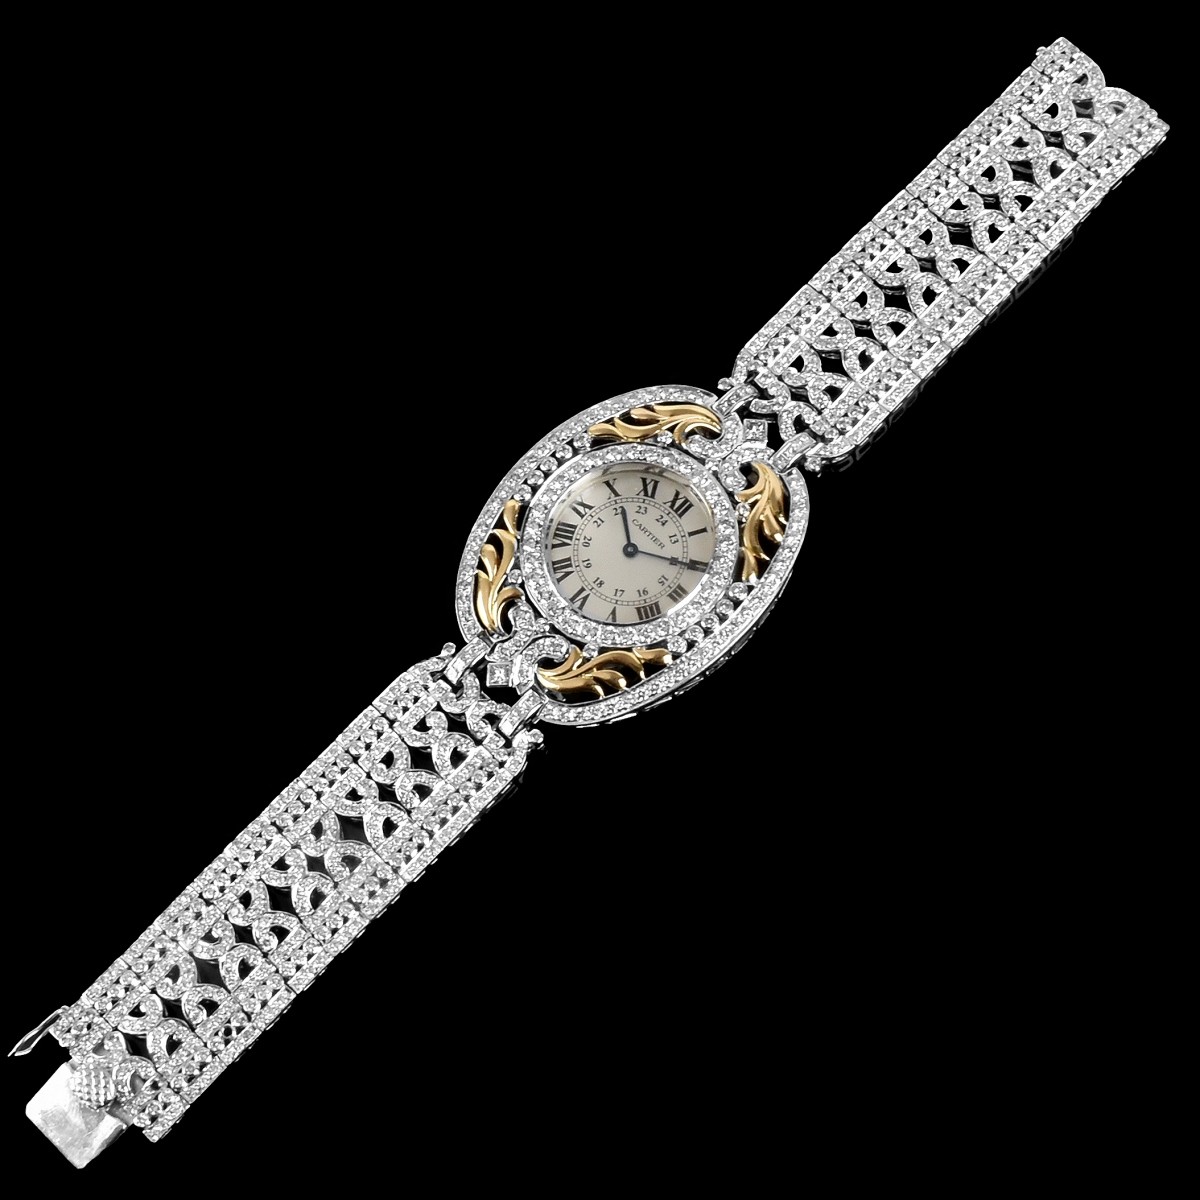 Diamond Bracelet with Cartier Watch